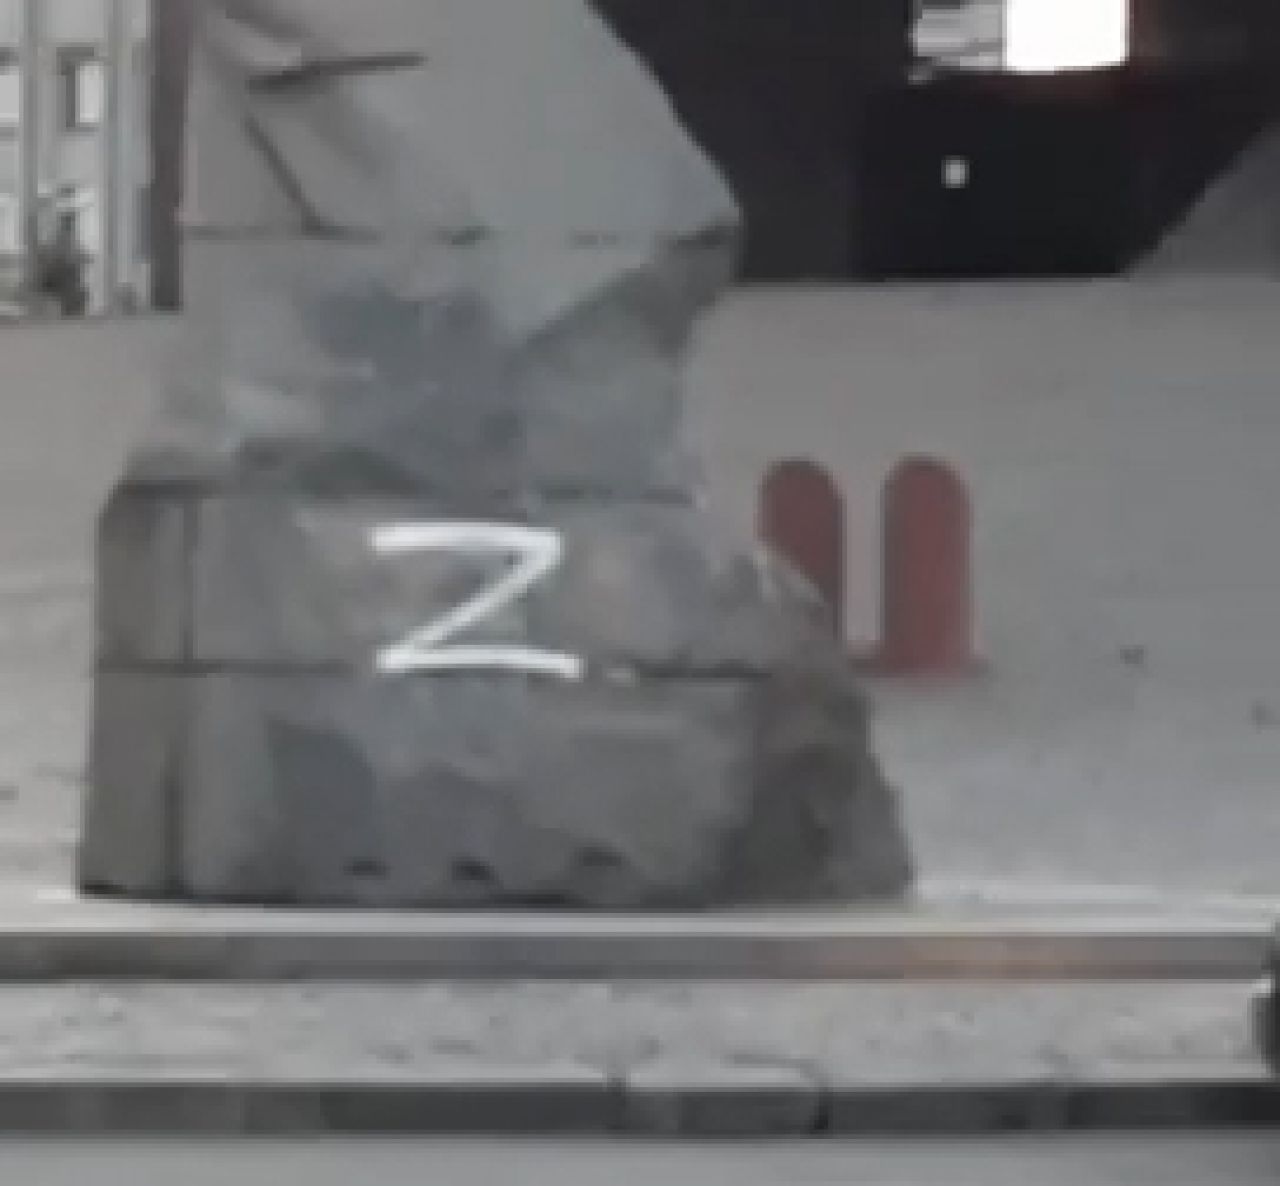 Шепетівчанин намалював символ "Z" на пам’ятнику Островському